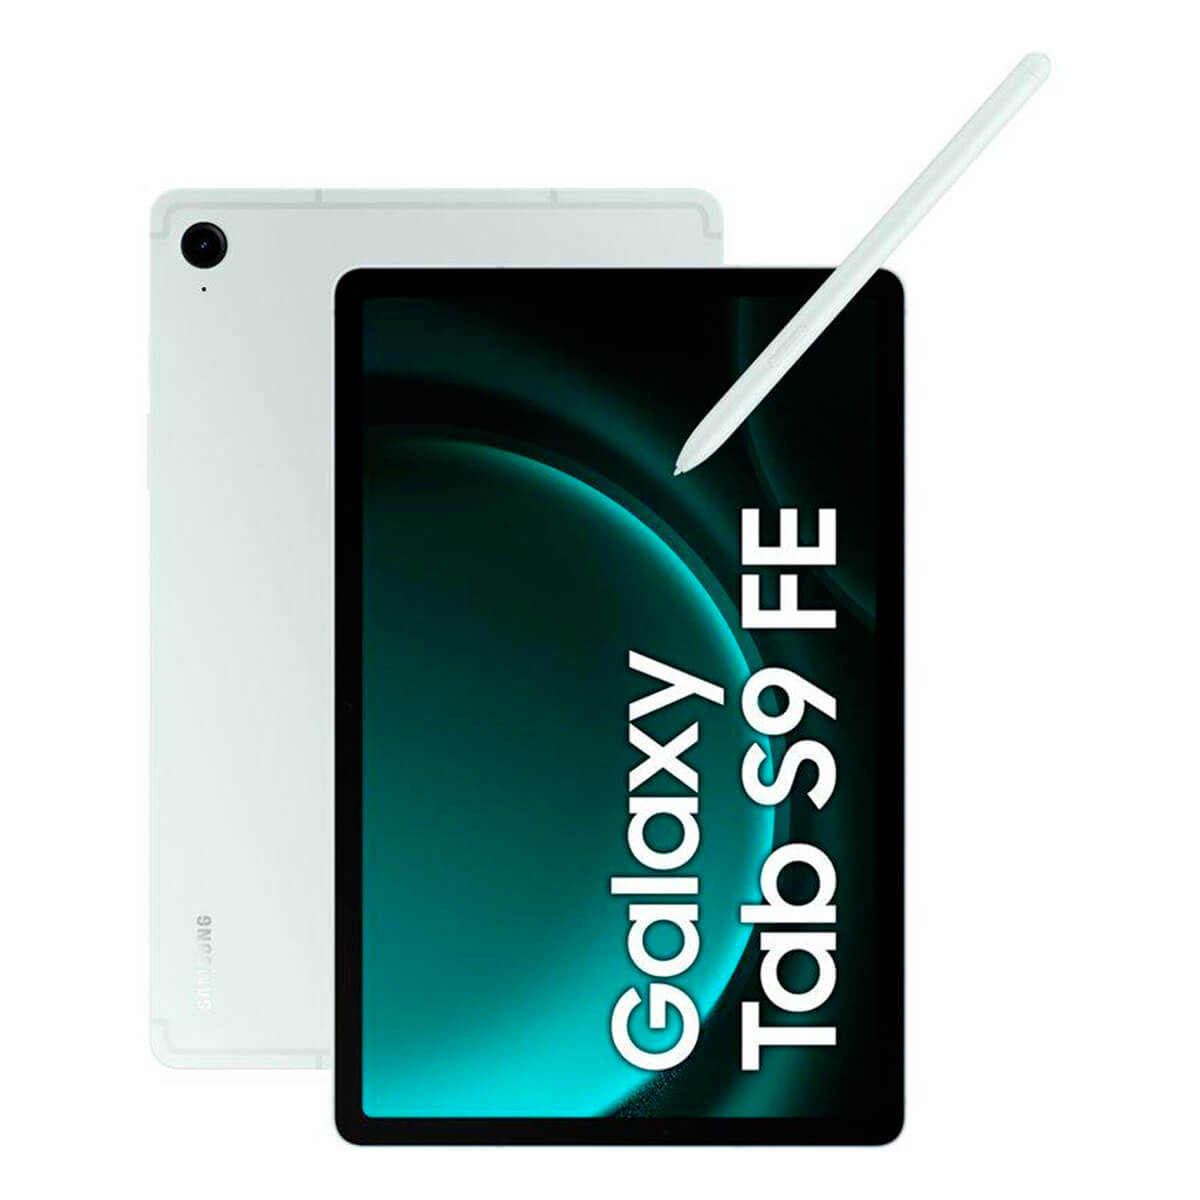 Tablet, Tab SAMSUNG 10,9 Zoll, FE, 128 GB, Grün S9 Galaxy